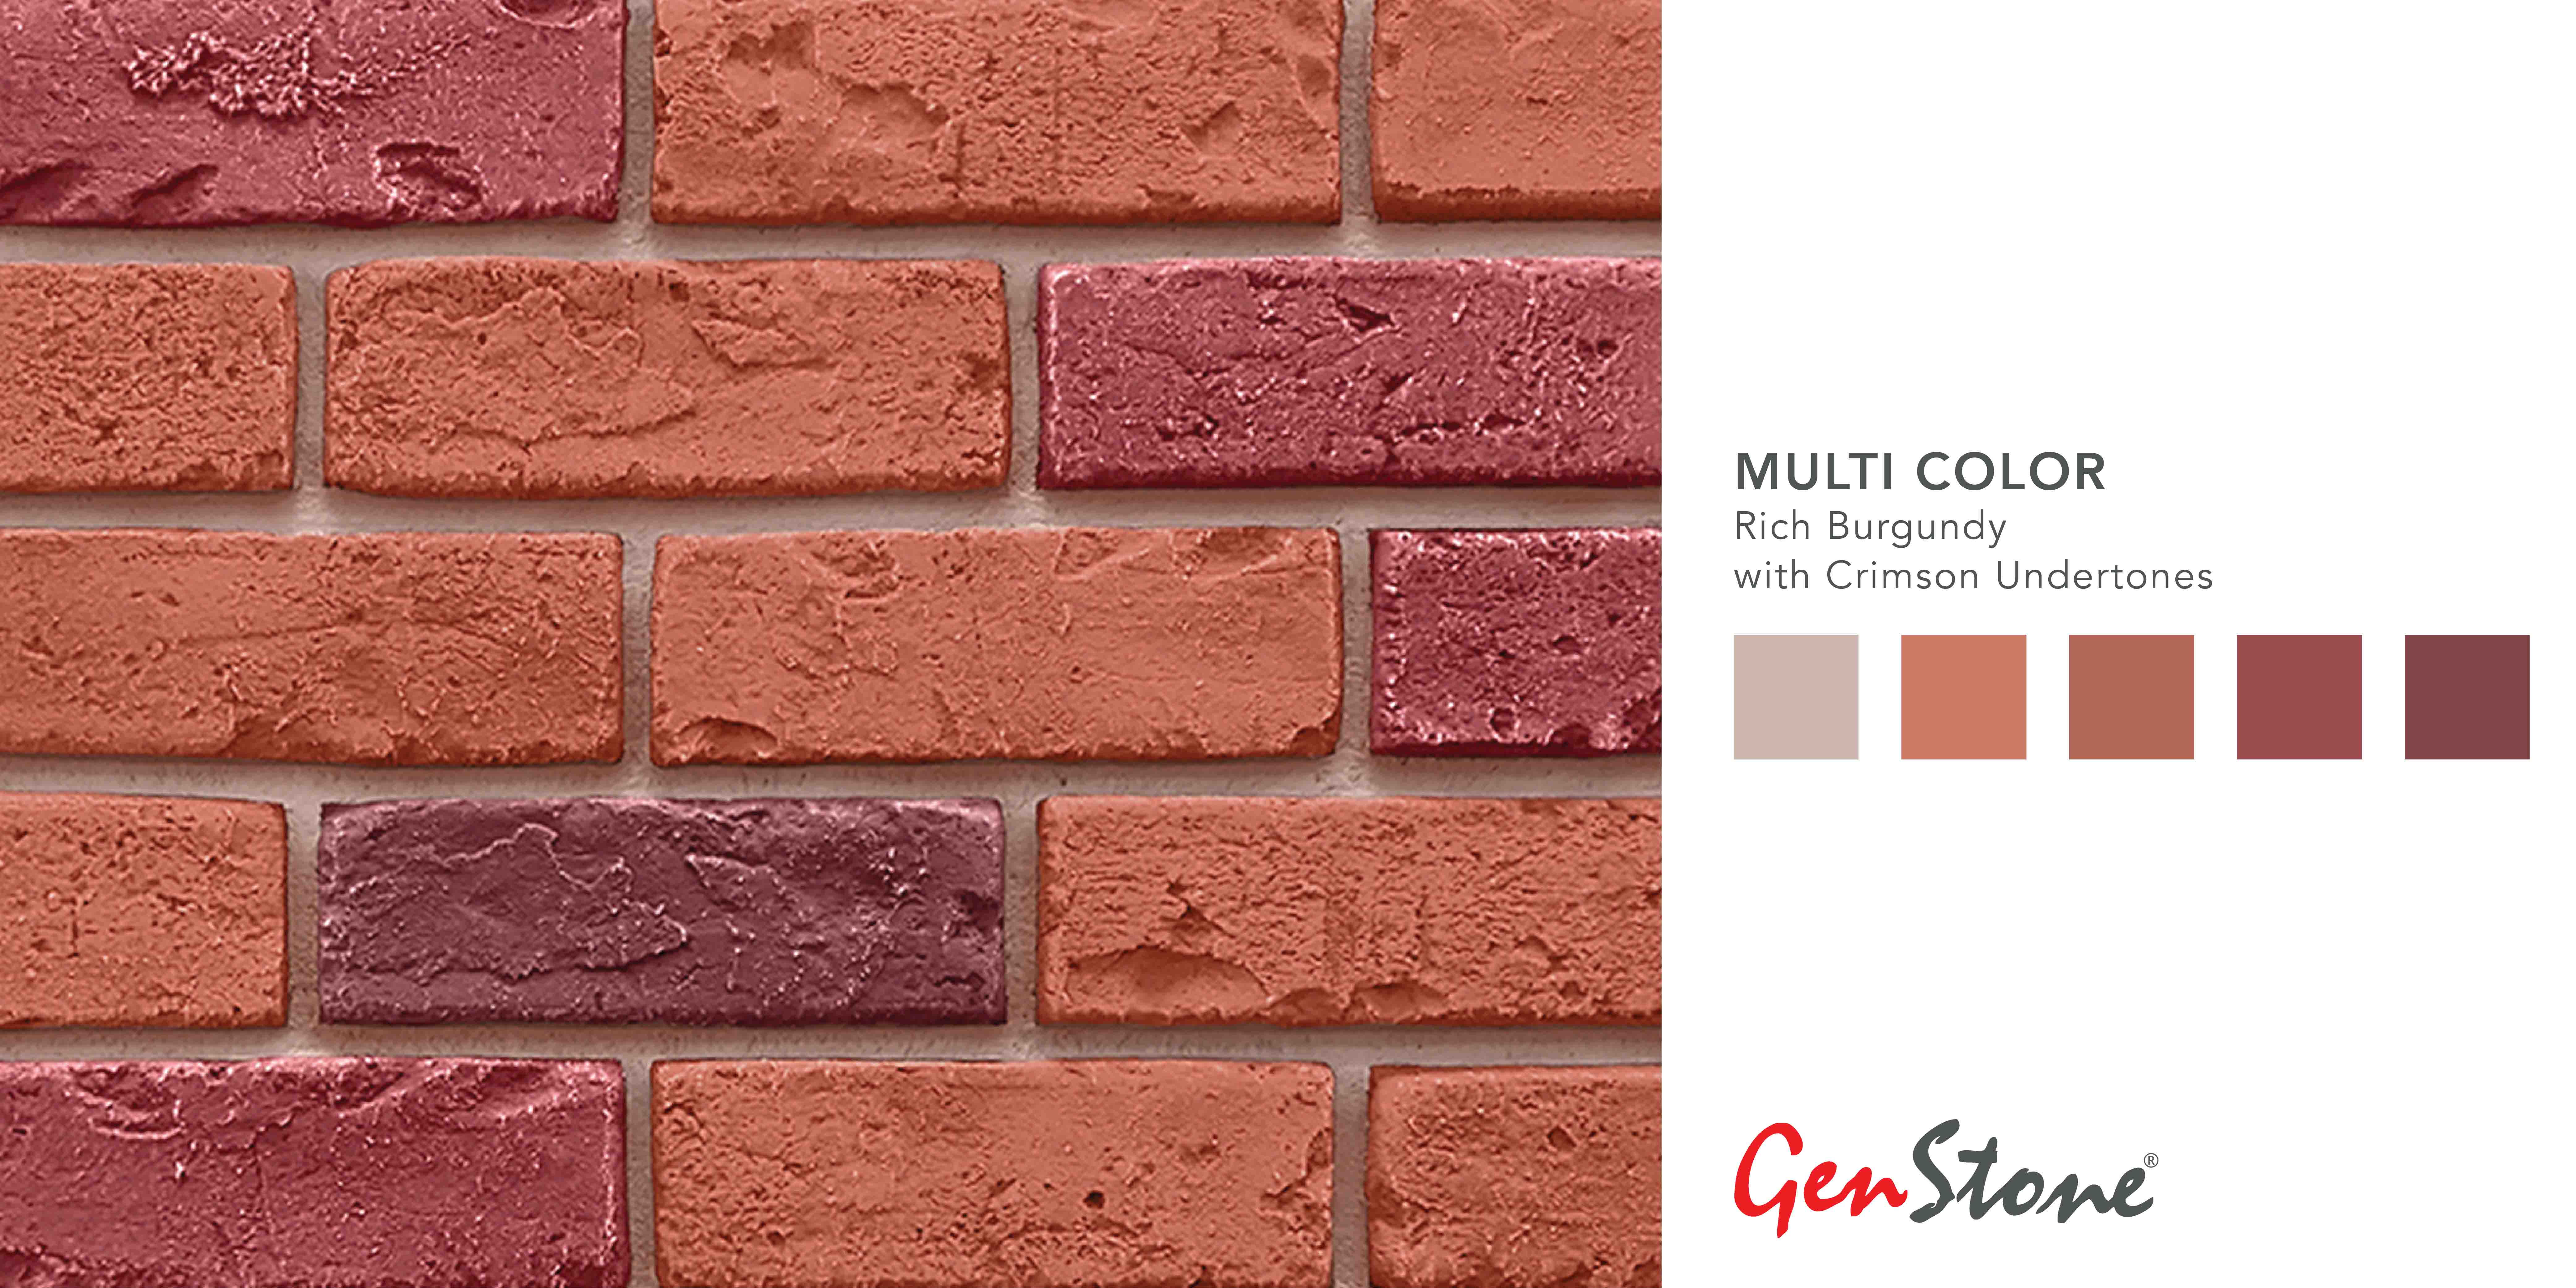 GenStone Multi Color Brick Profile